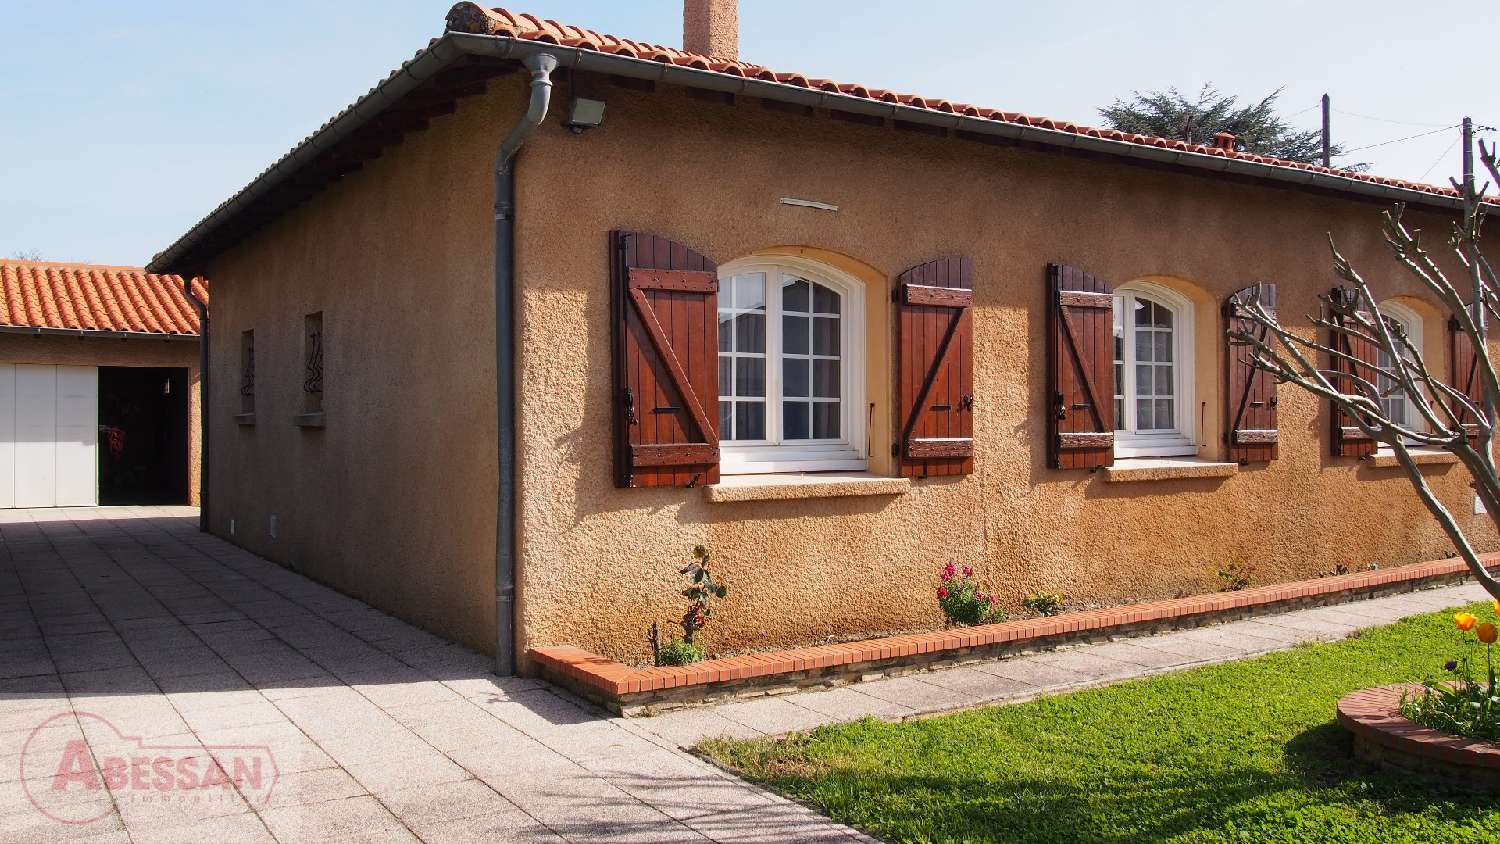  à vendre maison Muret Haute-Garonne 4